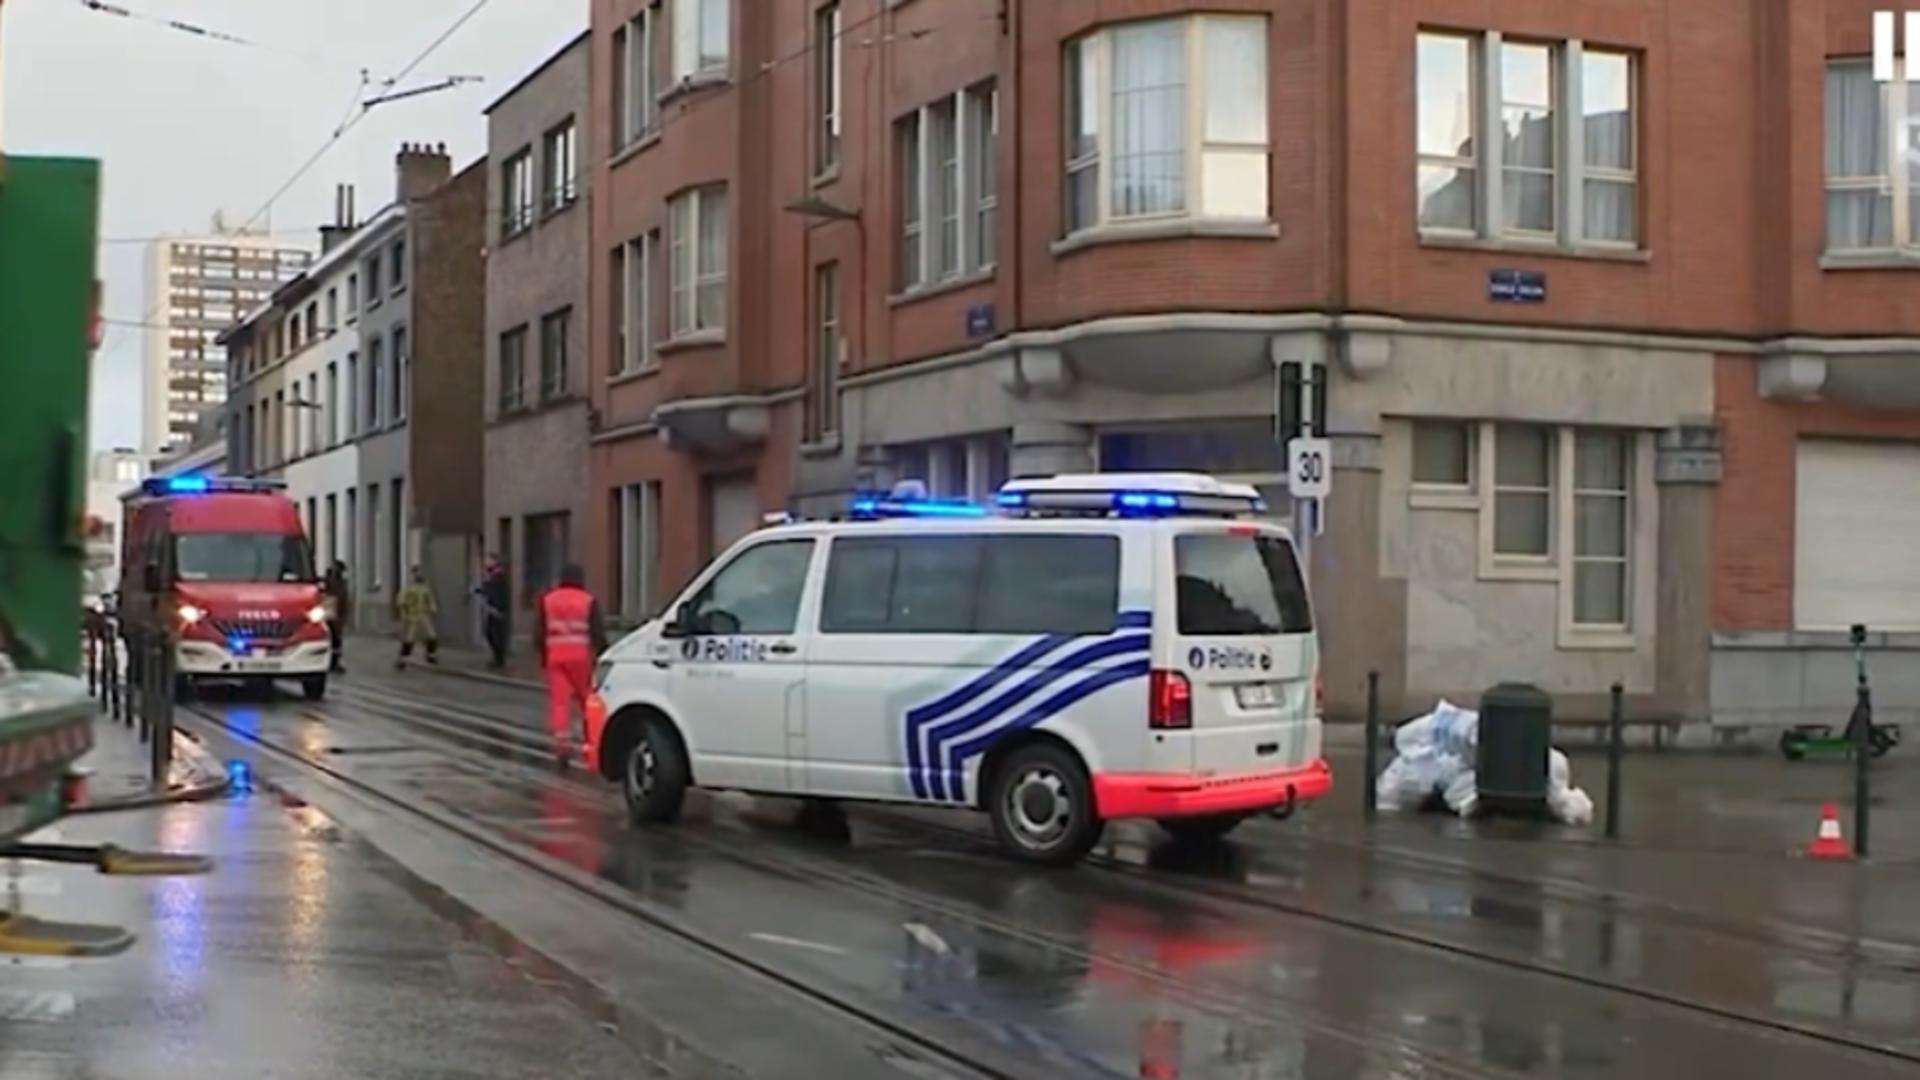 Atacuri armate pe străzile din Bruxelles. Poliția pune totul pe seama drogurilor/ Captură video